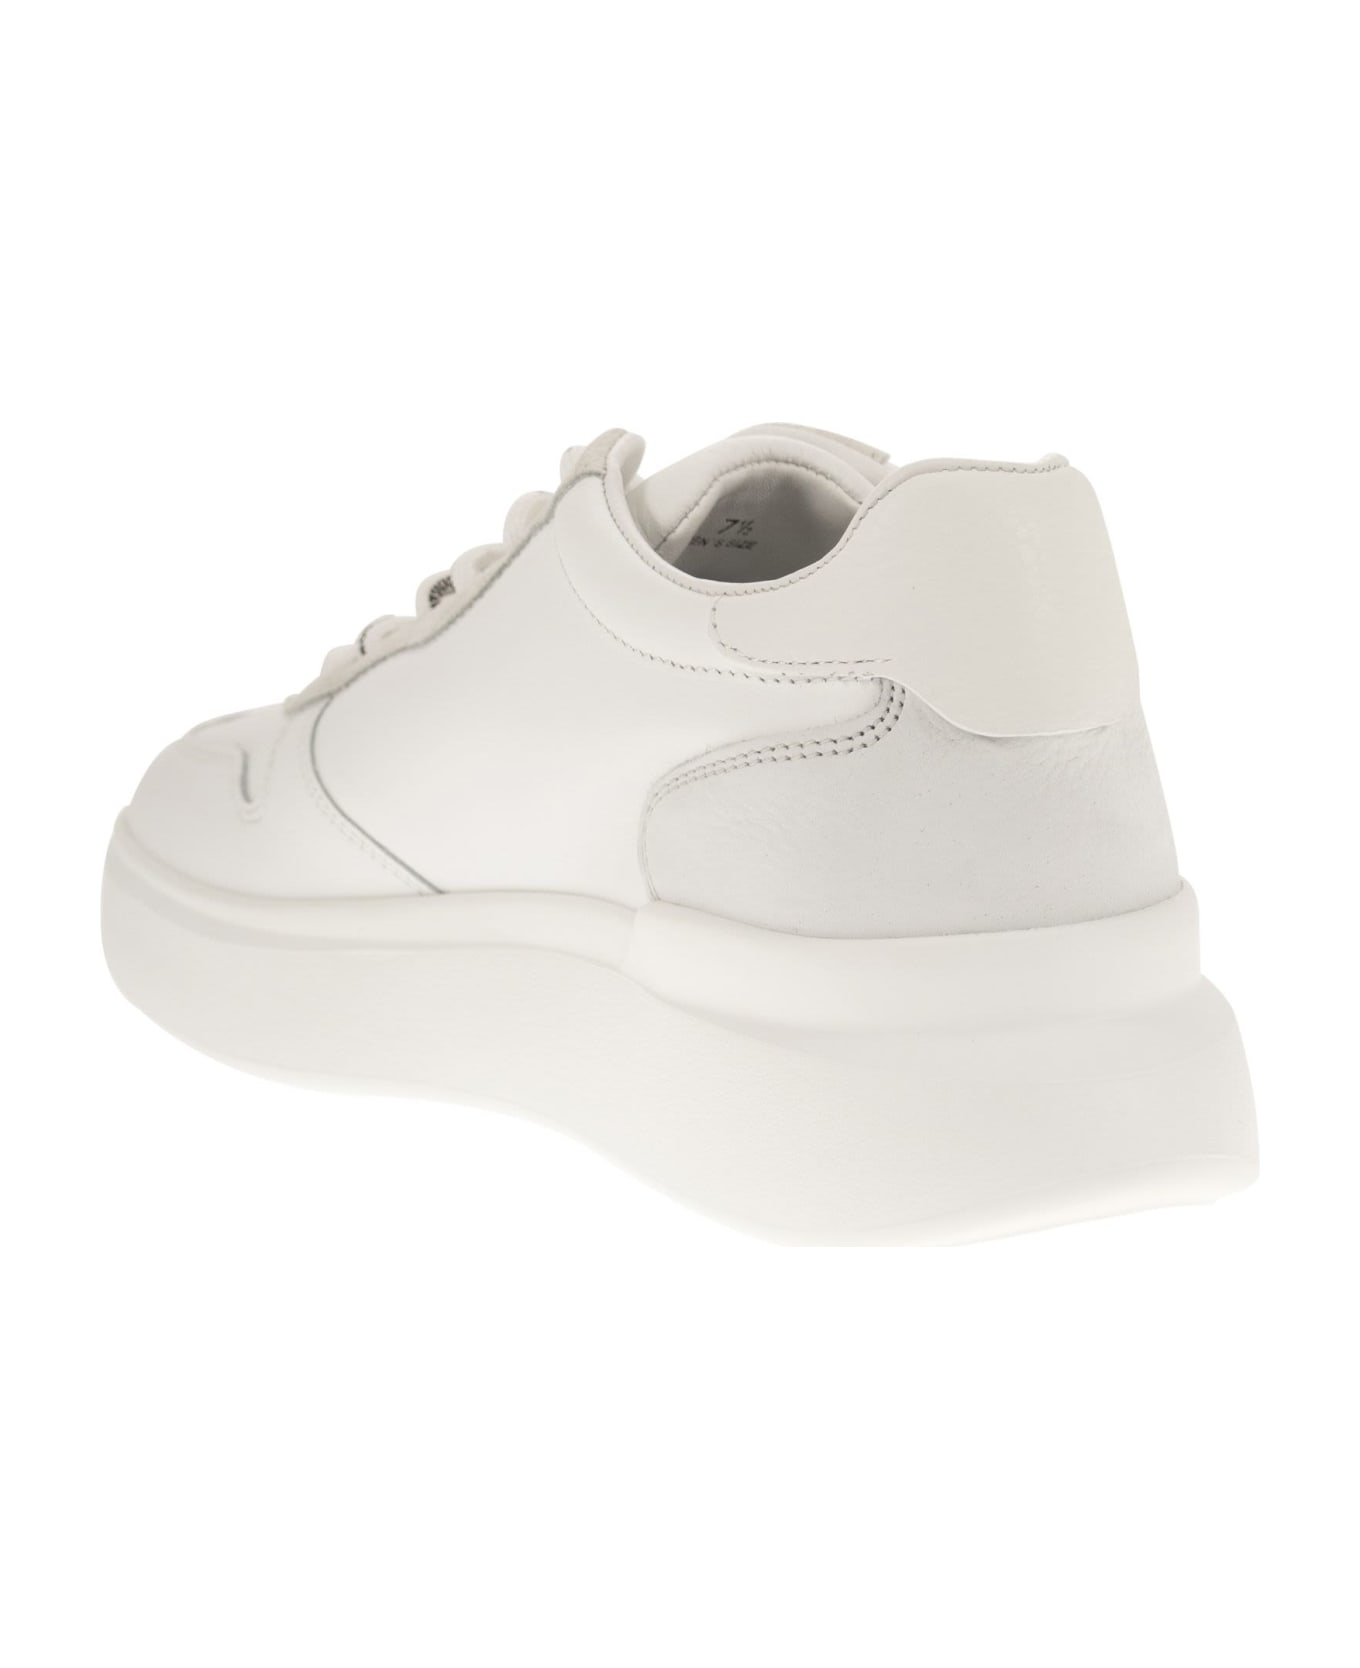 Hogan H580 - Sneakers - White スニーカー